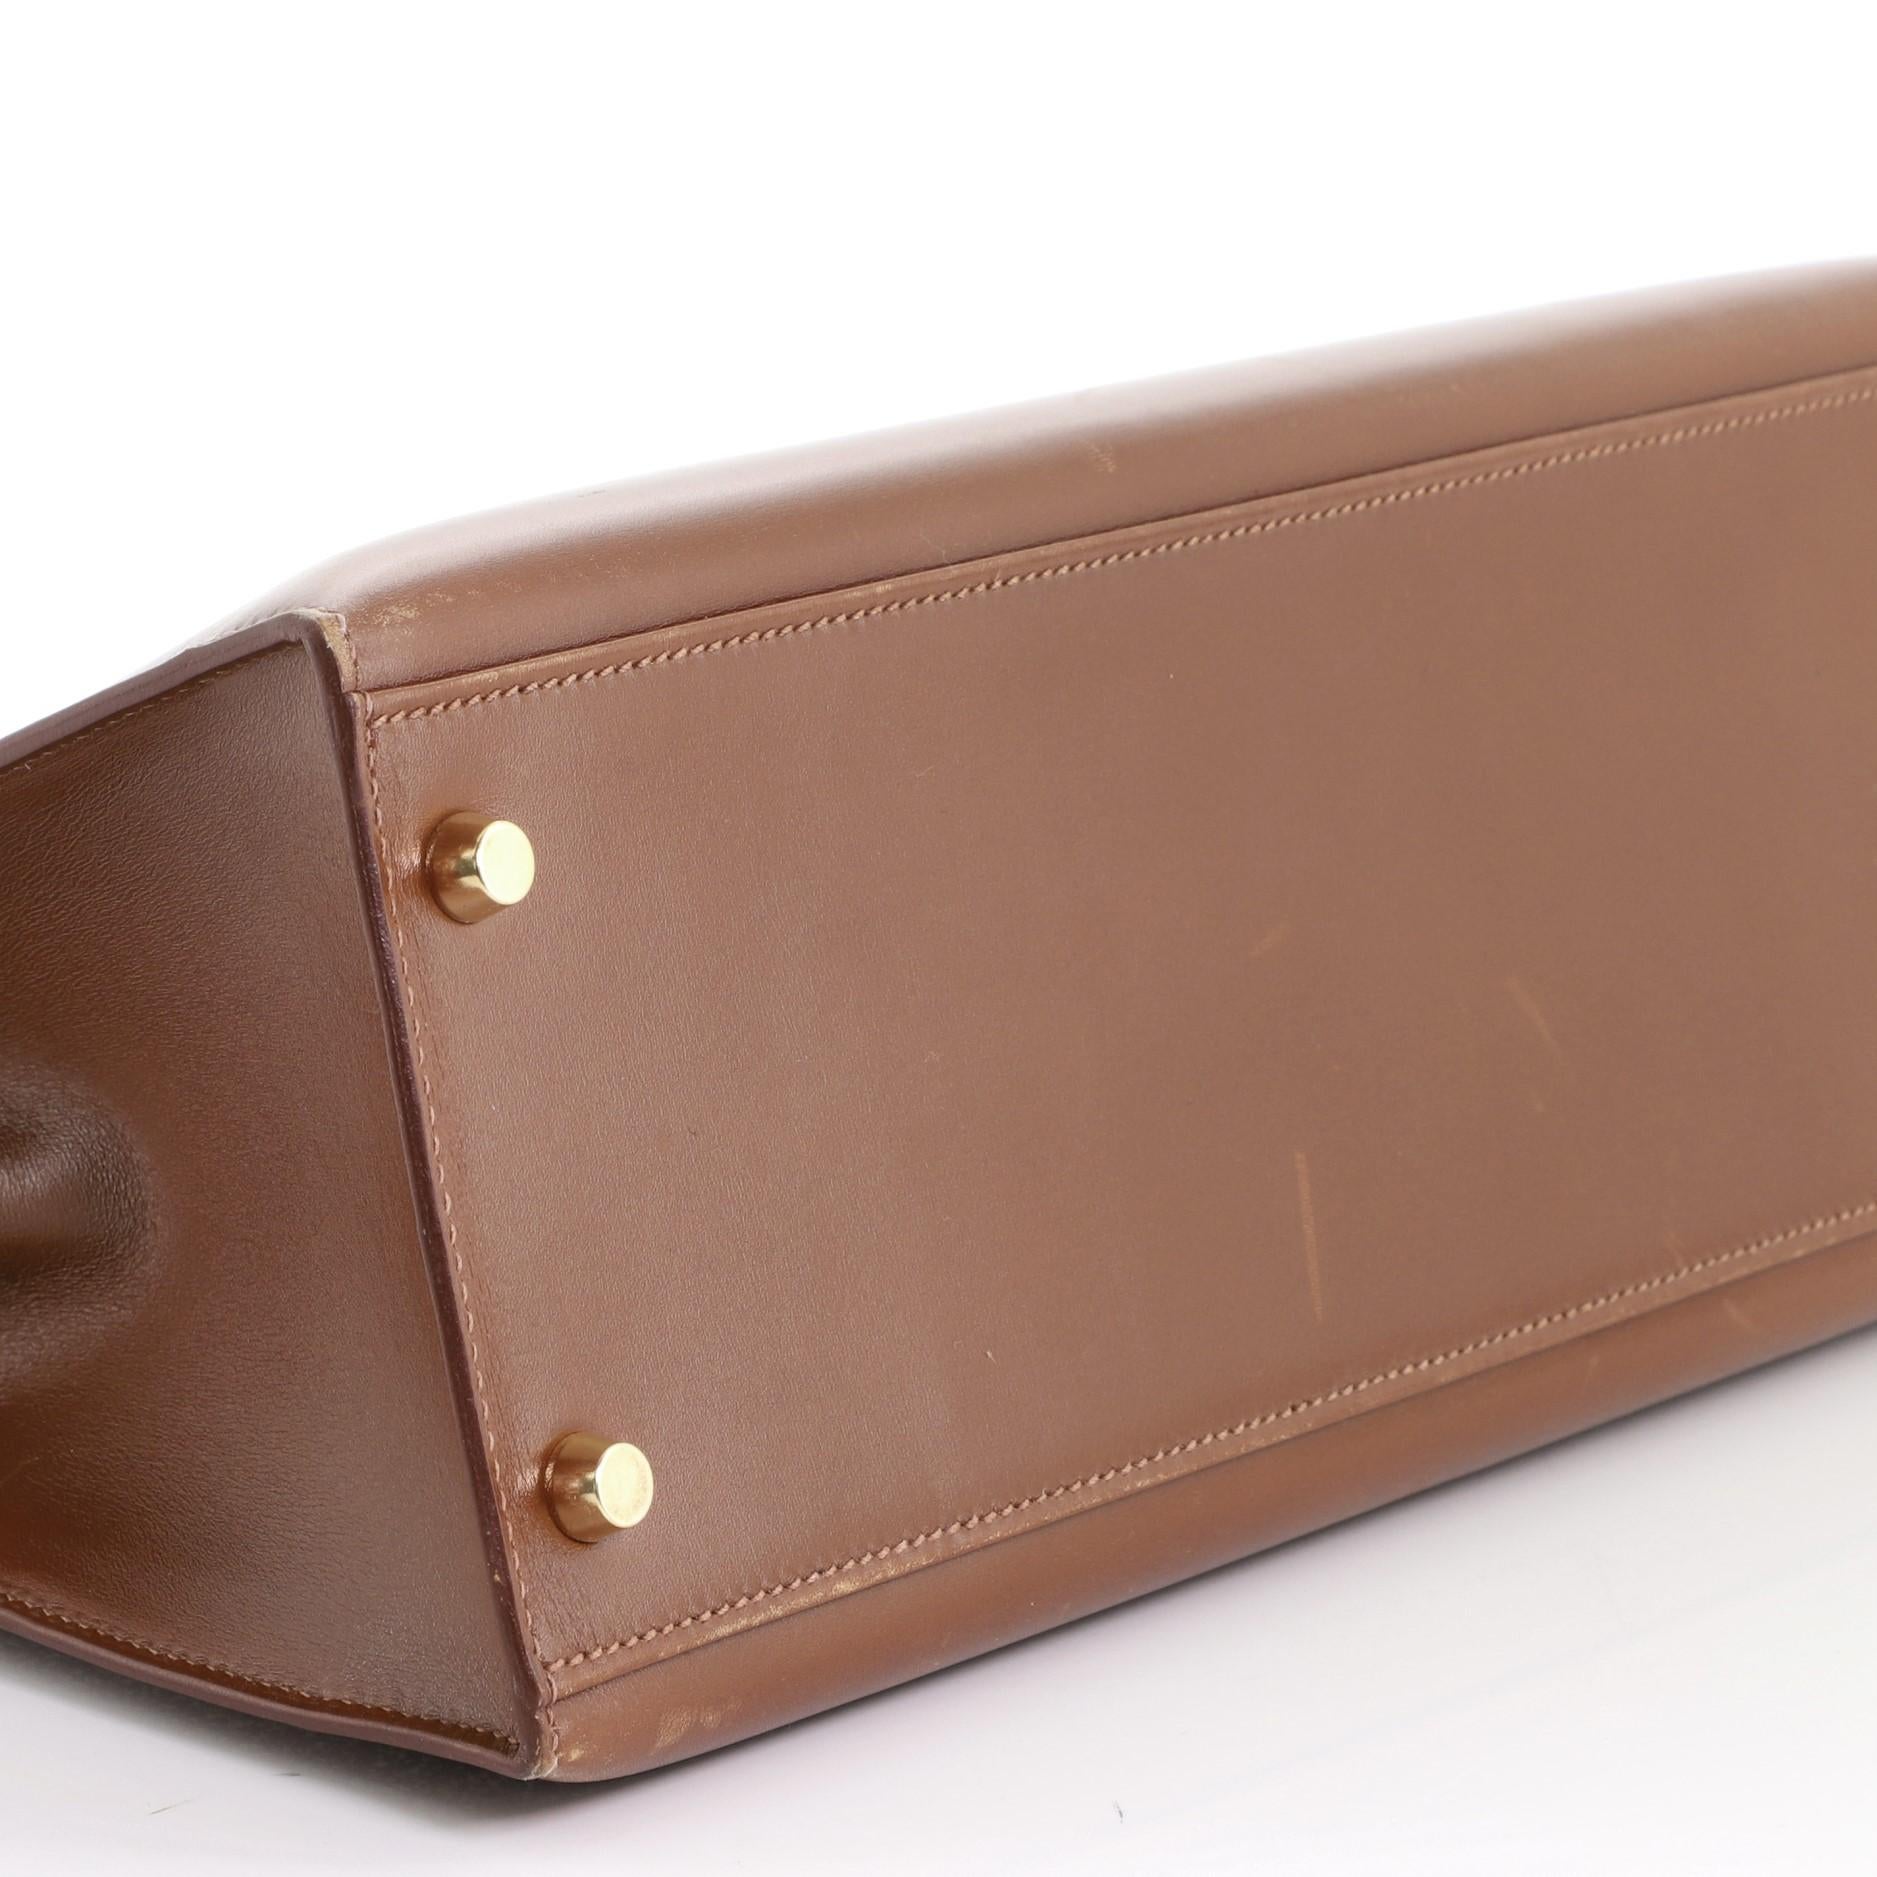 Hermes Kelly Handbag Noisette Box Calf with Gold Hardware 32 1